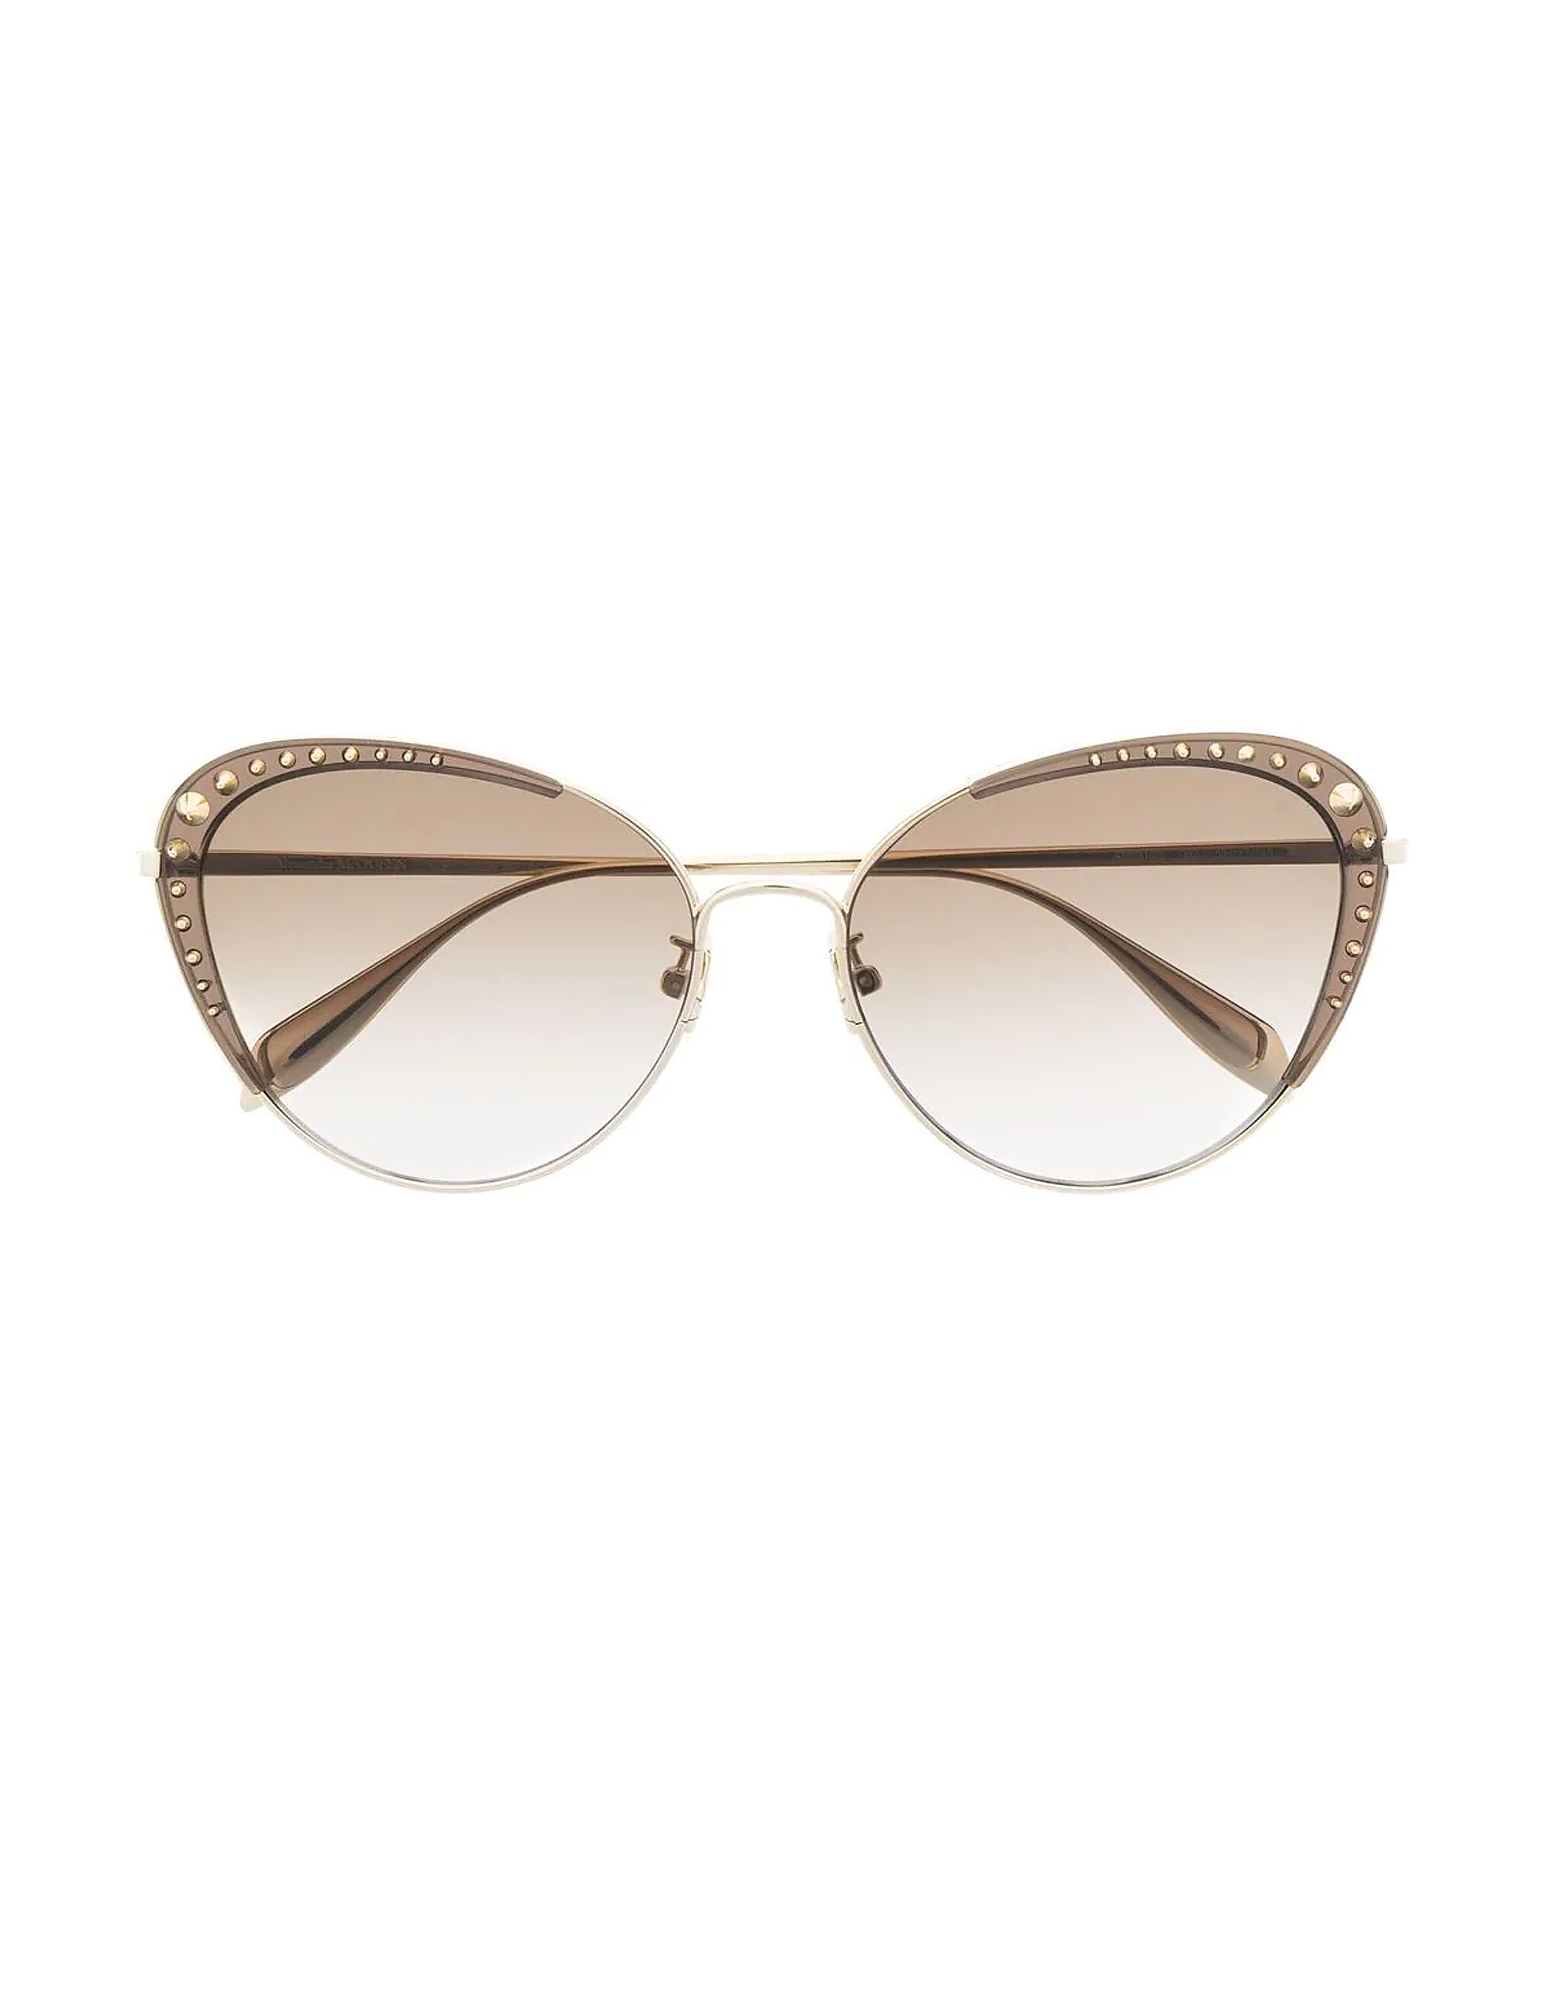 Alexander McQueen Sunglasses AM0310S Gold Butterfly Spike Studs Metal Frame Women's Sunglasses